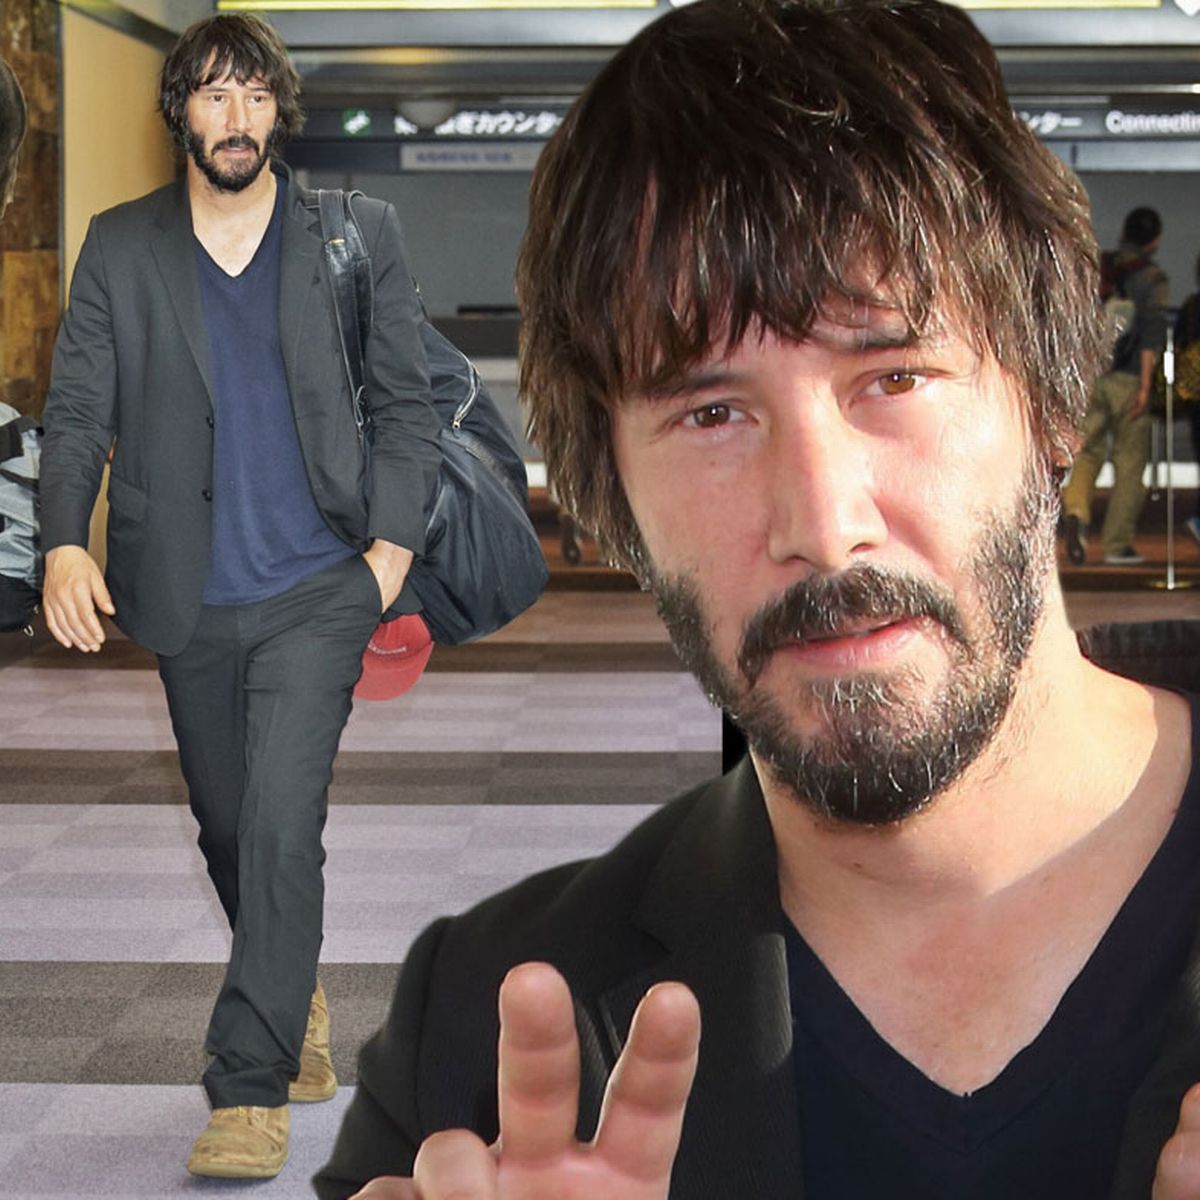 Keanu Reeves walking on the airport